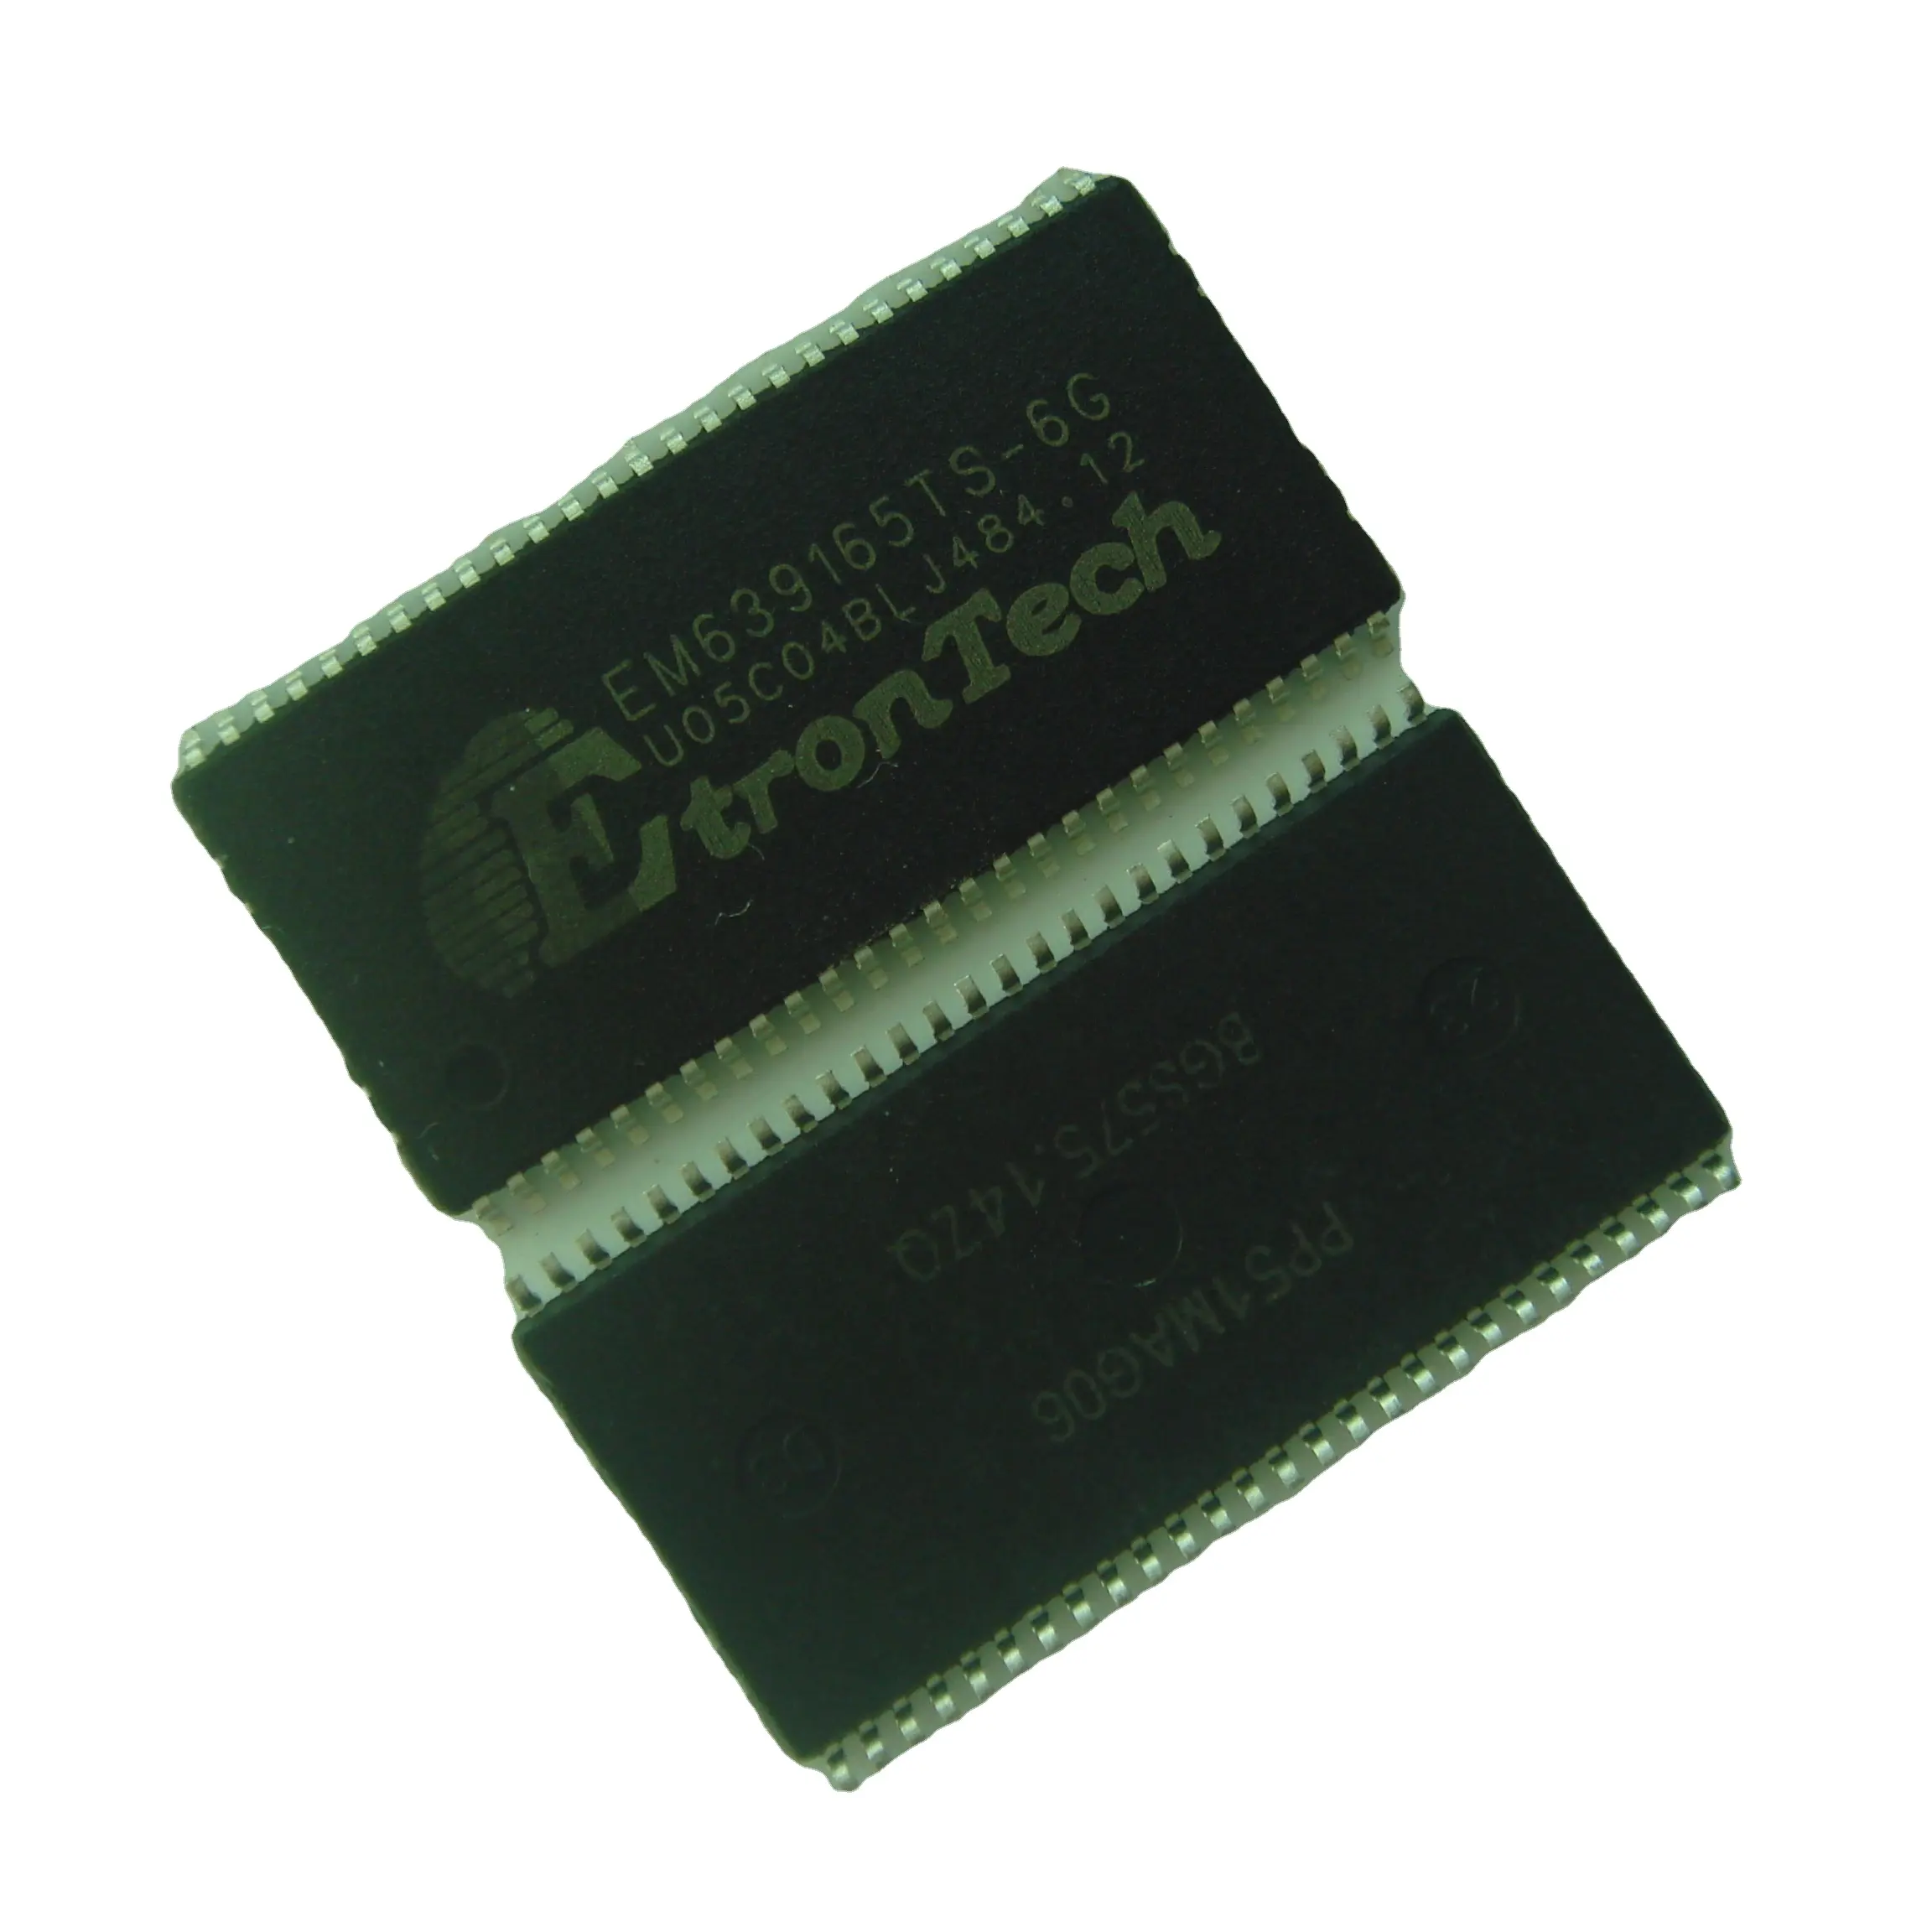 EM639165TS-6G объемом TSOP54 108 шт. лоток 8 Мега x 16 синхронное динамическое ОЗУ SDRAM (синхронное динамическое ОЗУ)